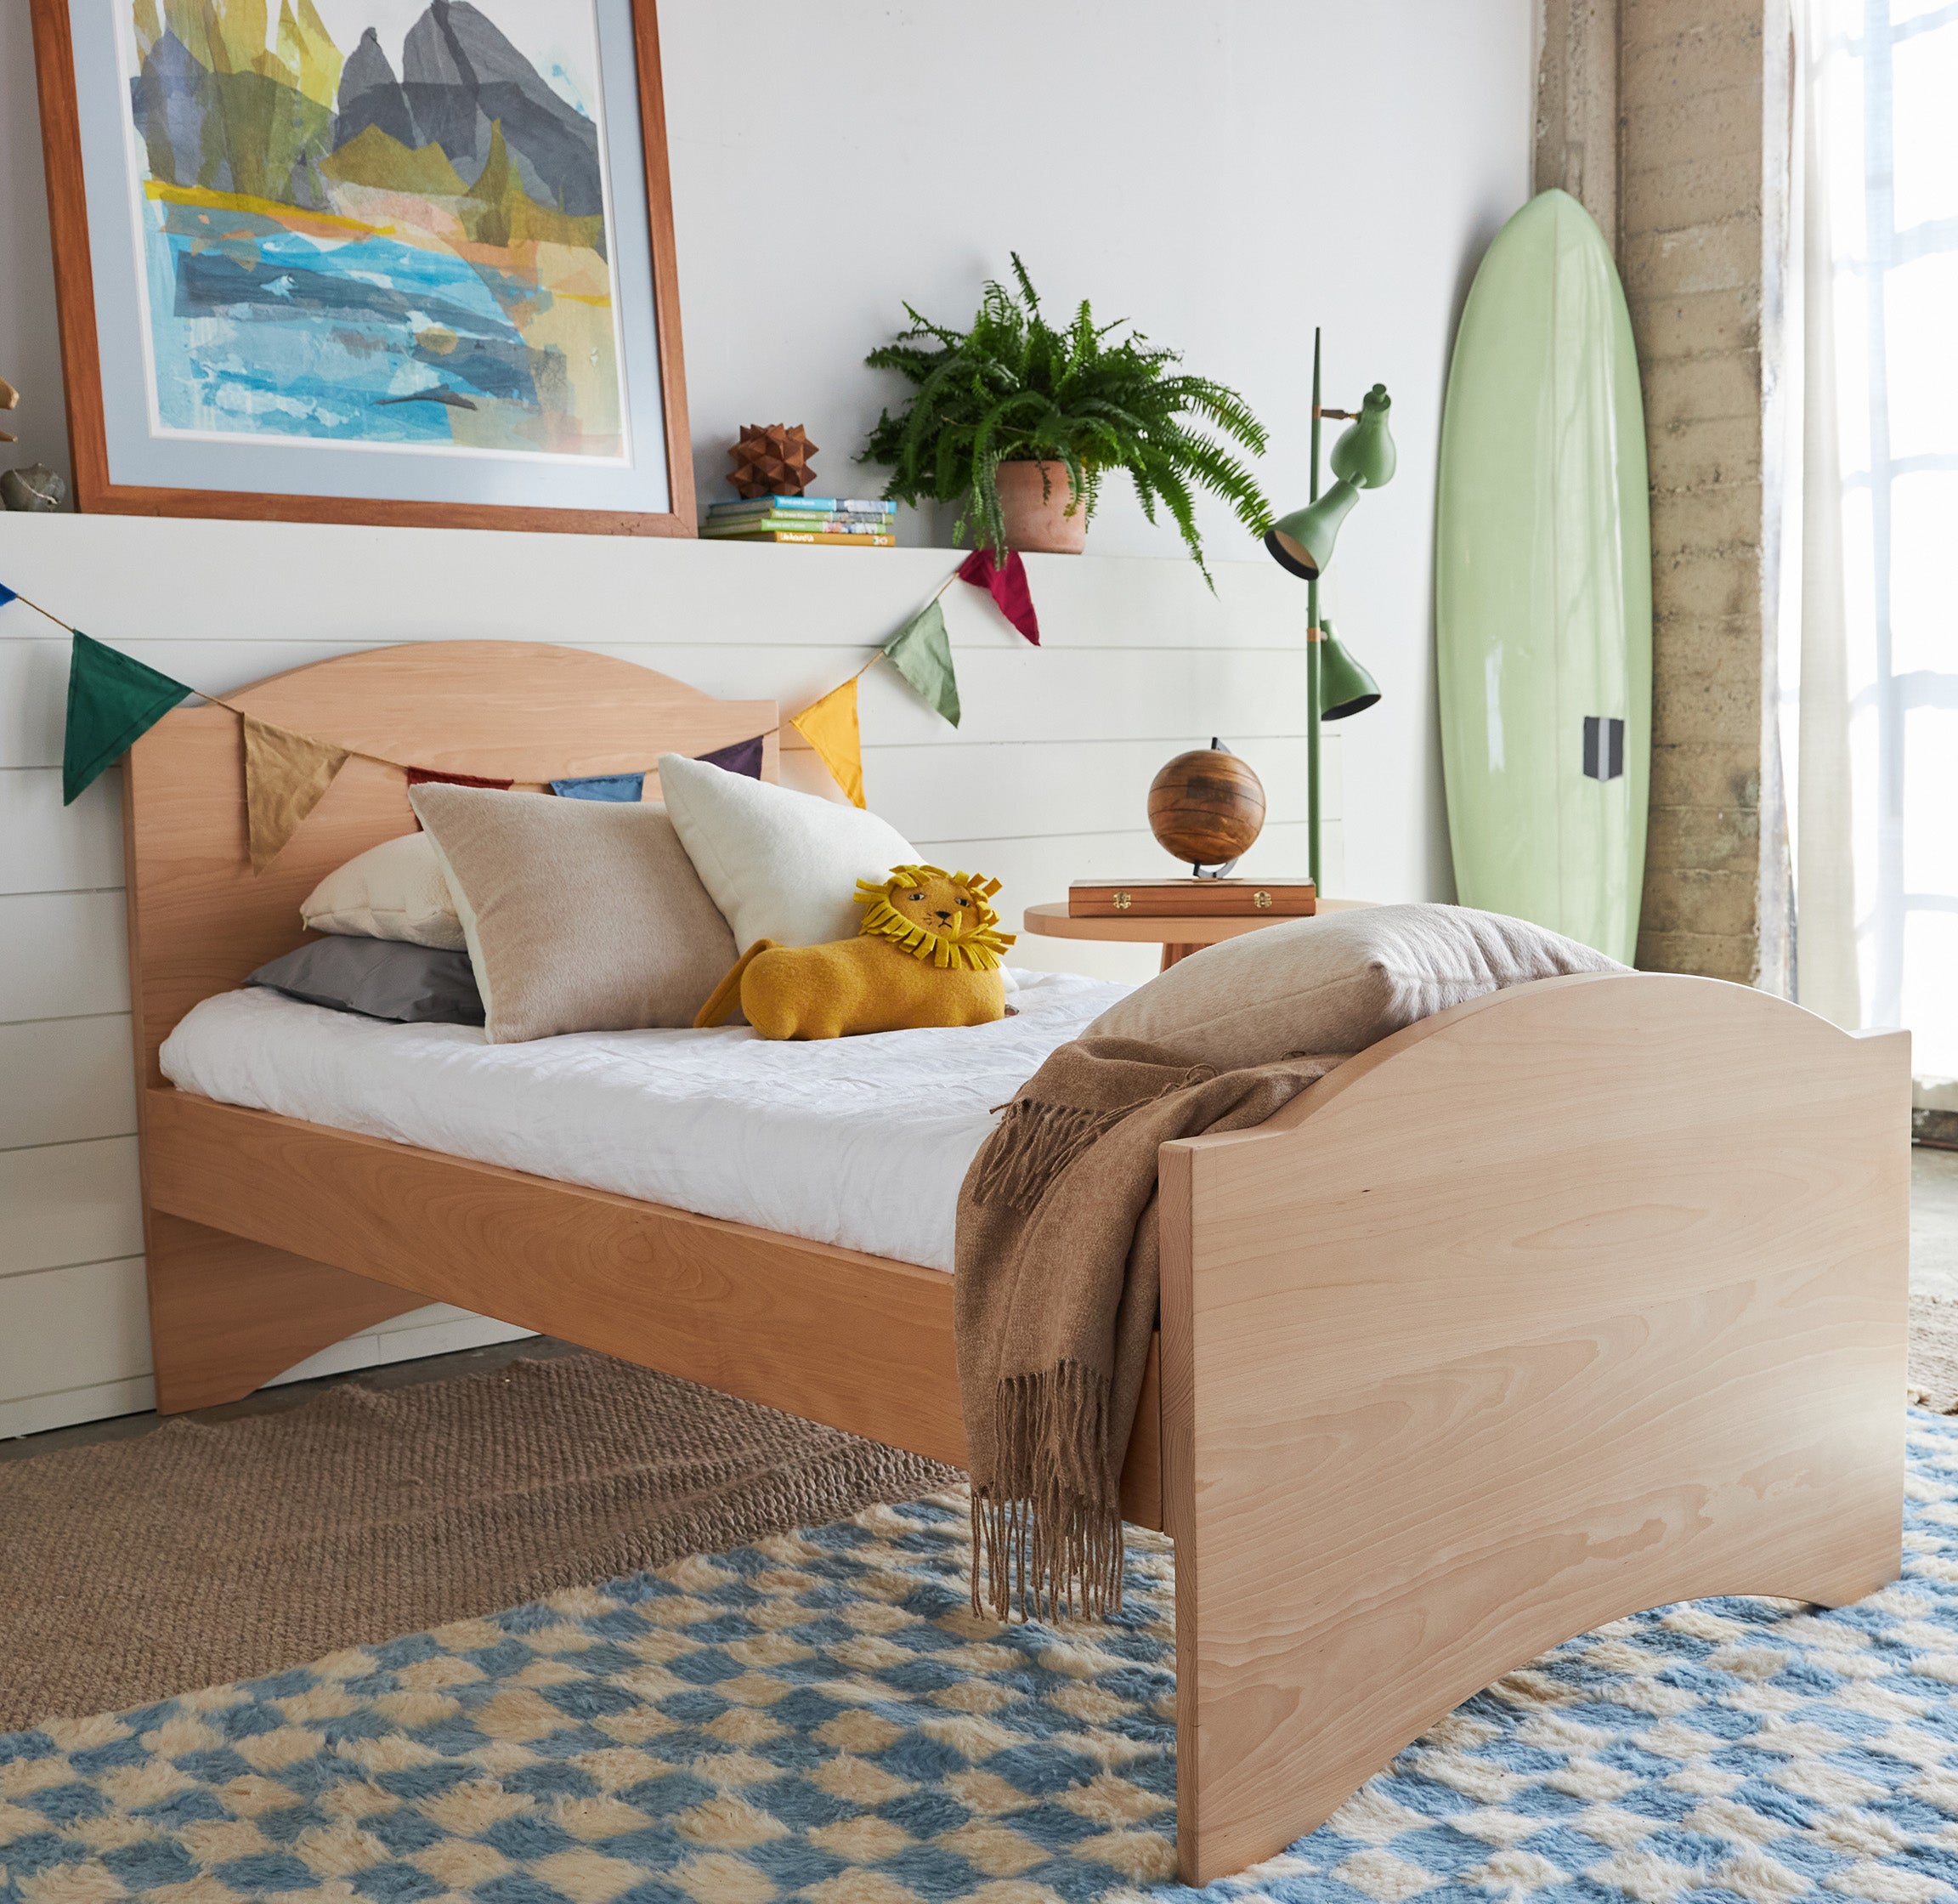 grond Uithoudingsvermogen Echter Trundle Bed Frame for Kids Bedroom | Avocado Green Mattress®